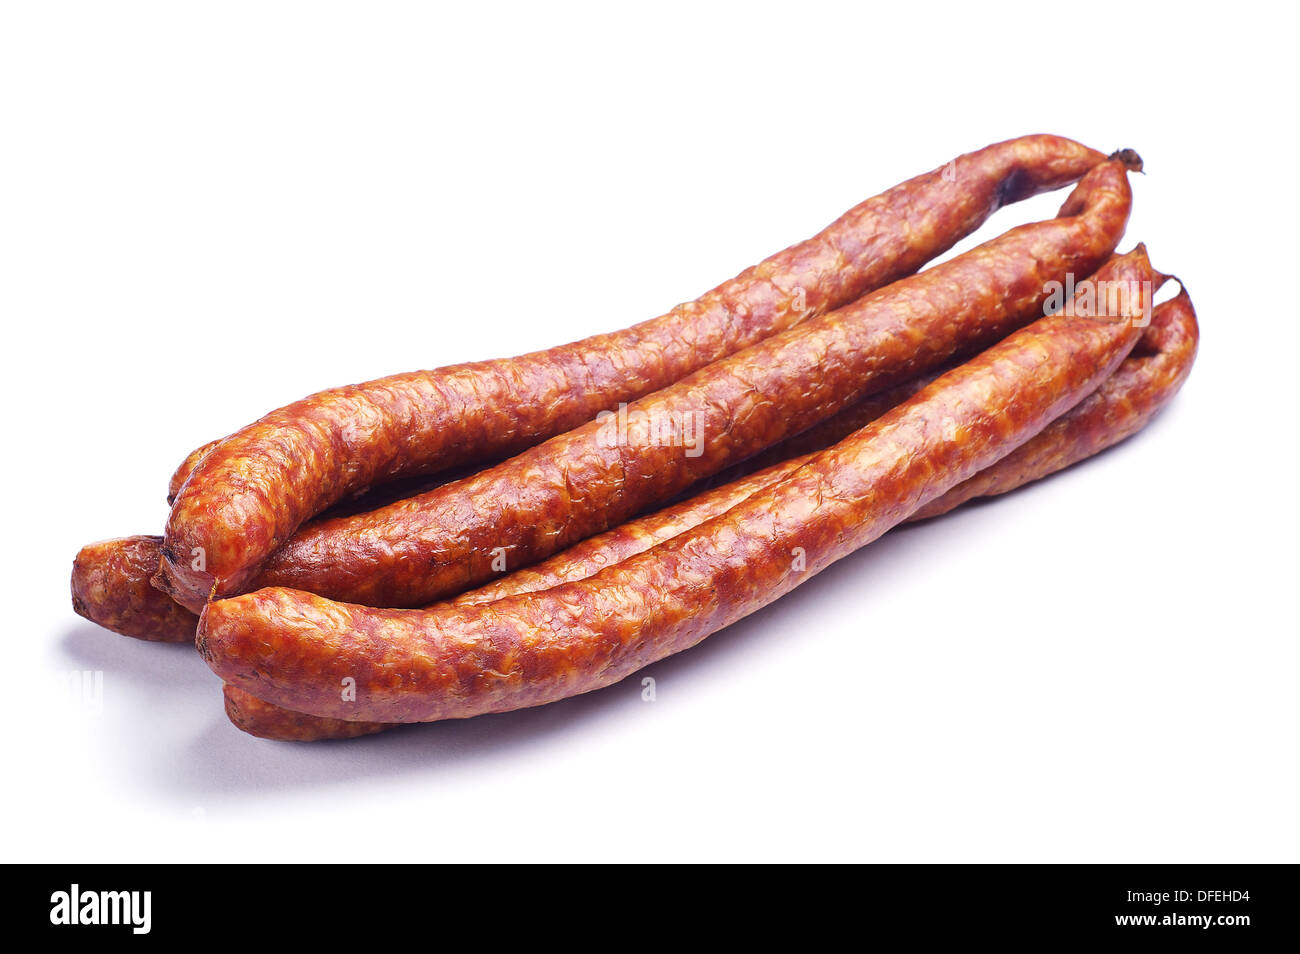 Homemade smoked sausage on white Stock Photo